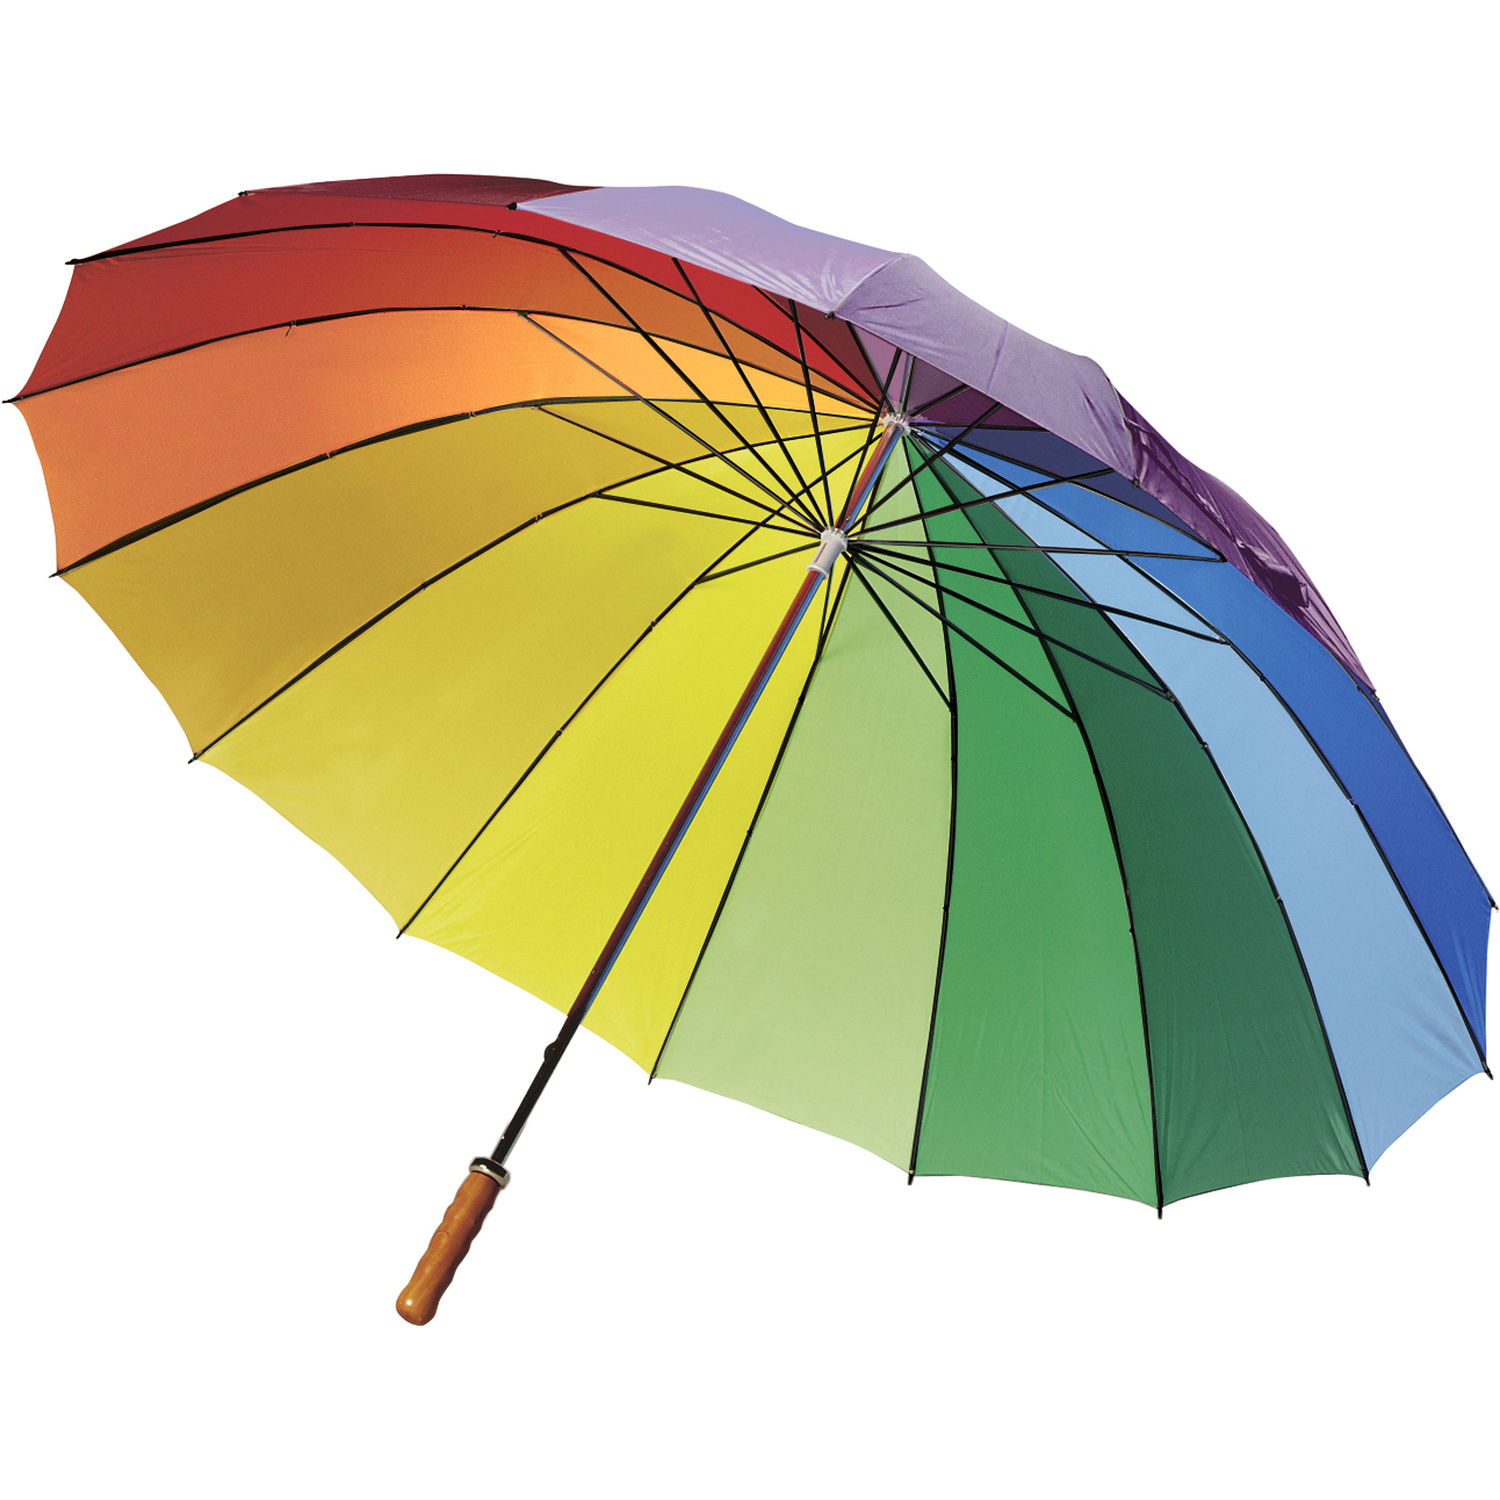 004058 009999999 3d135 ins pro01 fal - Foldable umbrella